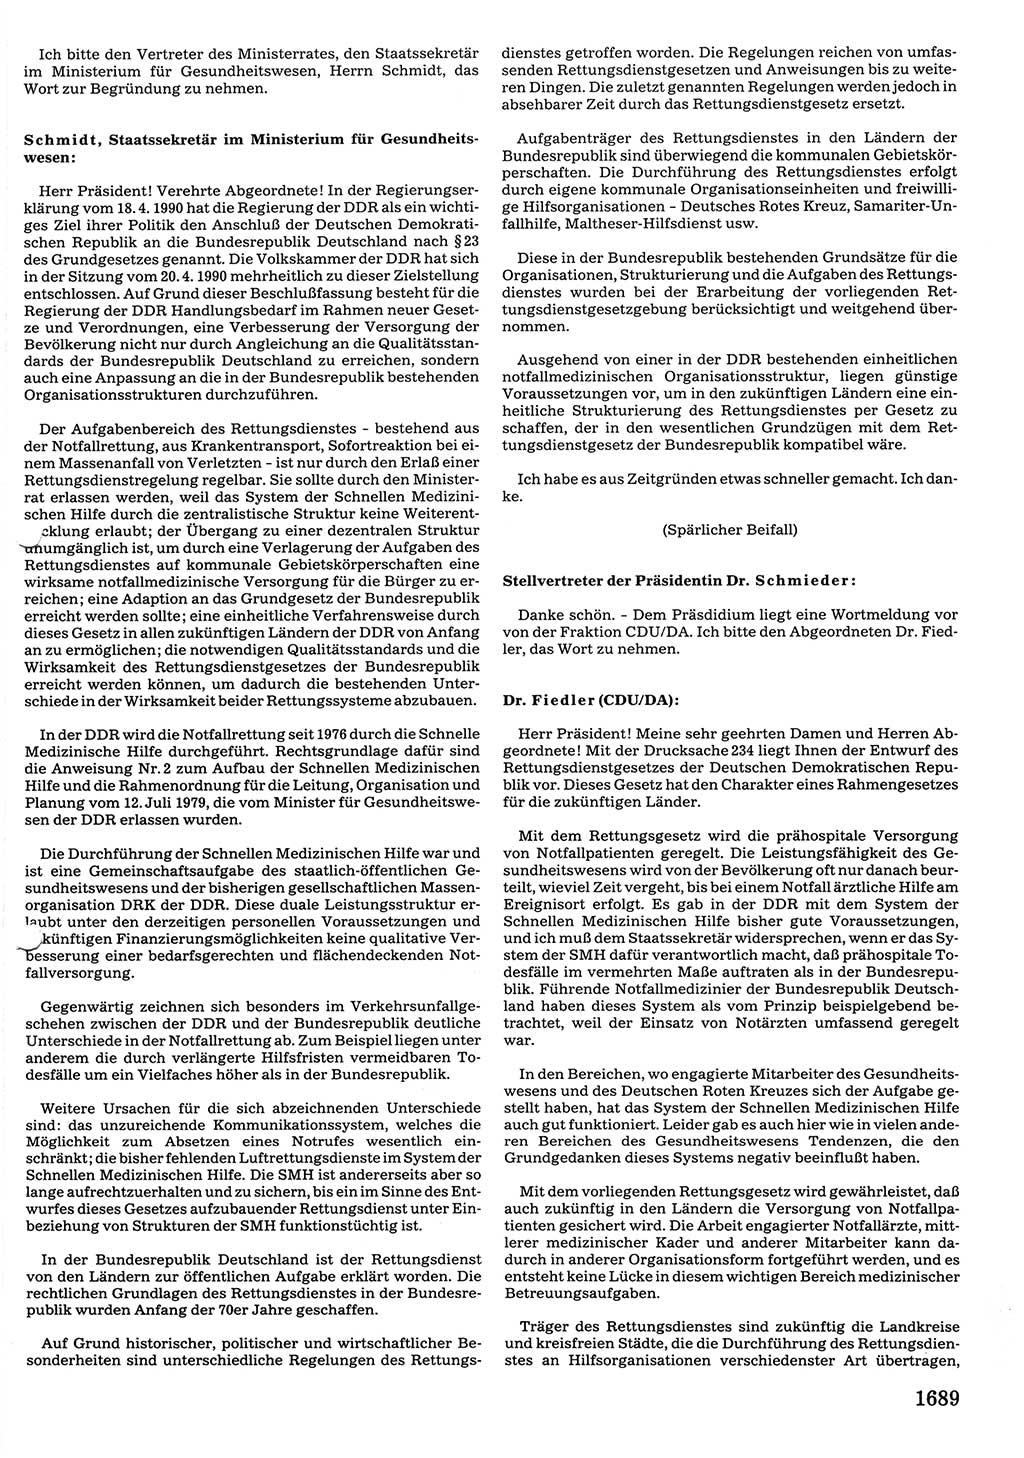 Tagungen der Volkskammer (VK) der Deutschen Demokratischen Republik (DDR), 10. Wahlperiode 1990, Seite 1689 (VK. DDR 10. WP. 1990, Prot. Tg. 1-38, 5.4.-2.10.1990, S. 1689)